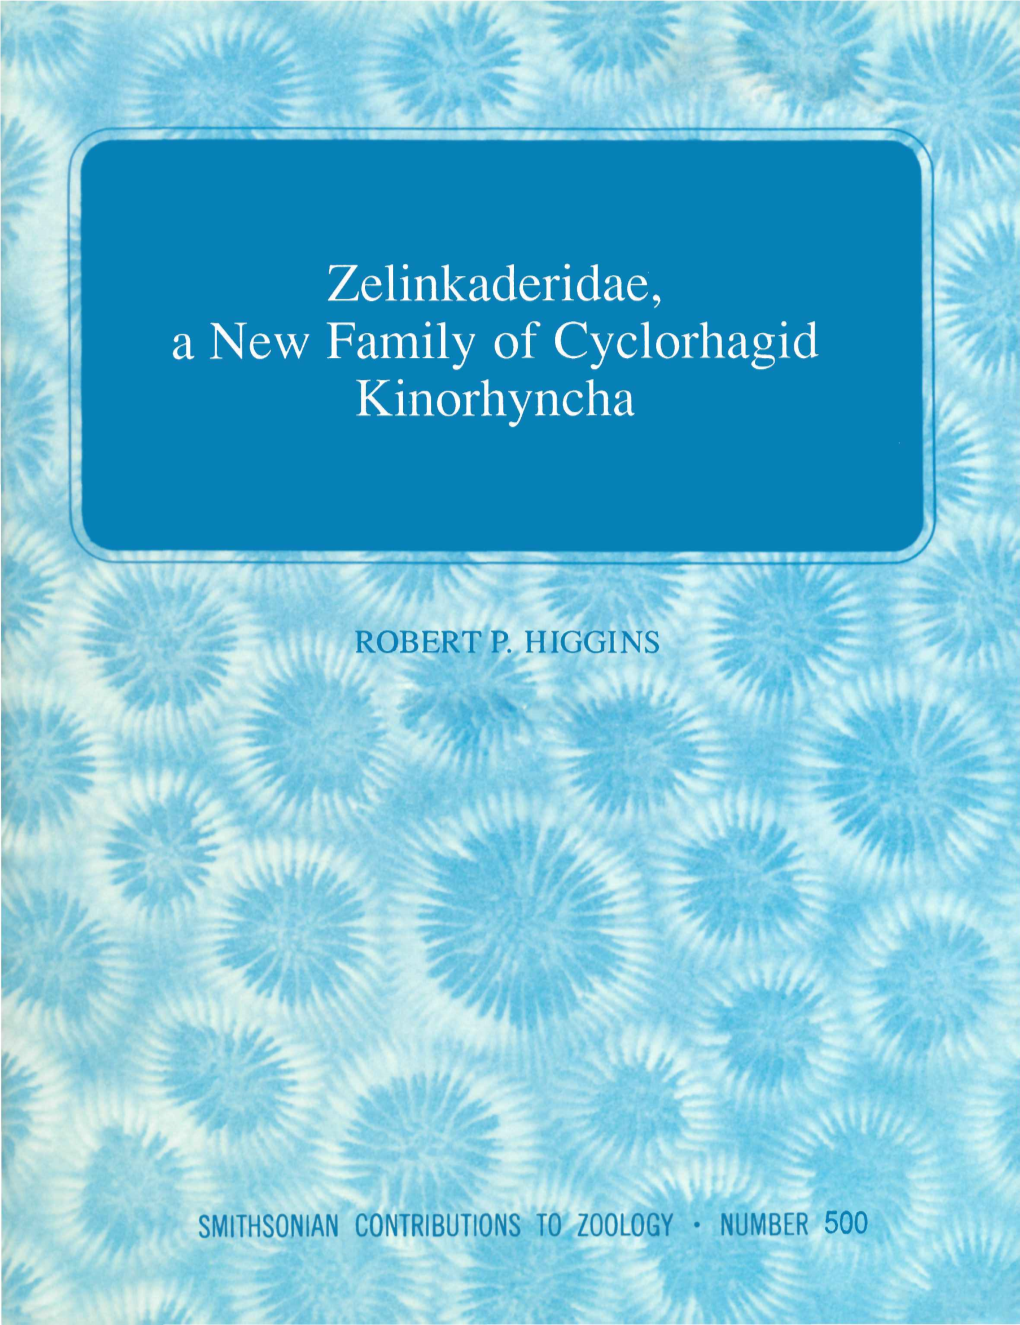 Zelinkaderidae, a New Family of Cyclorhagid Kinorhyncha